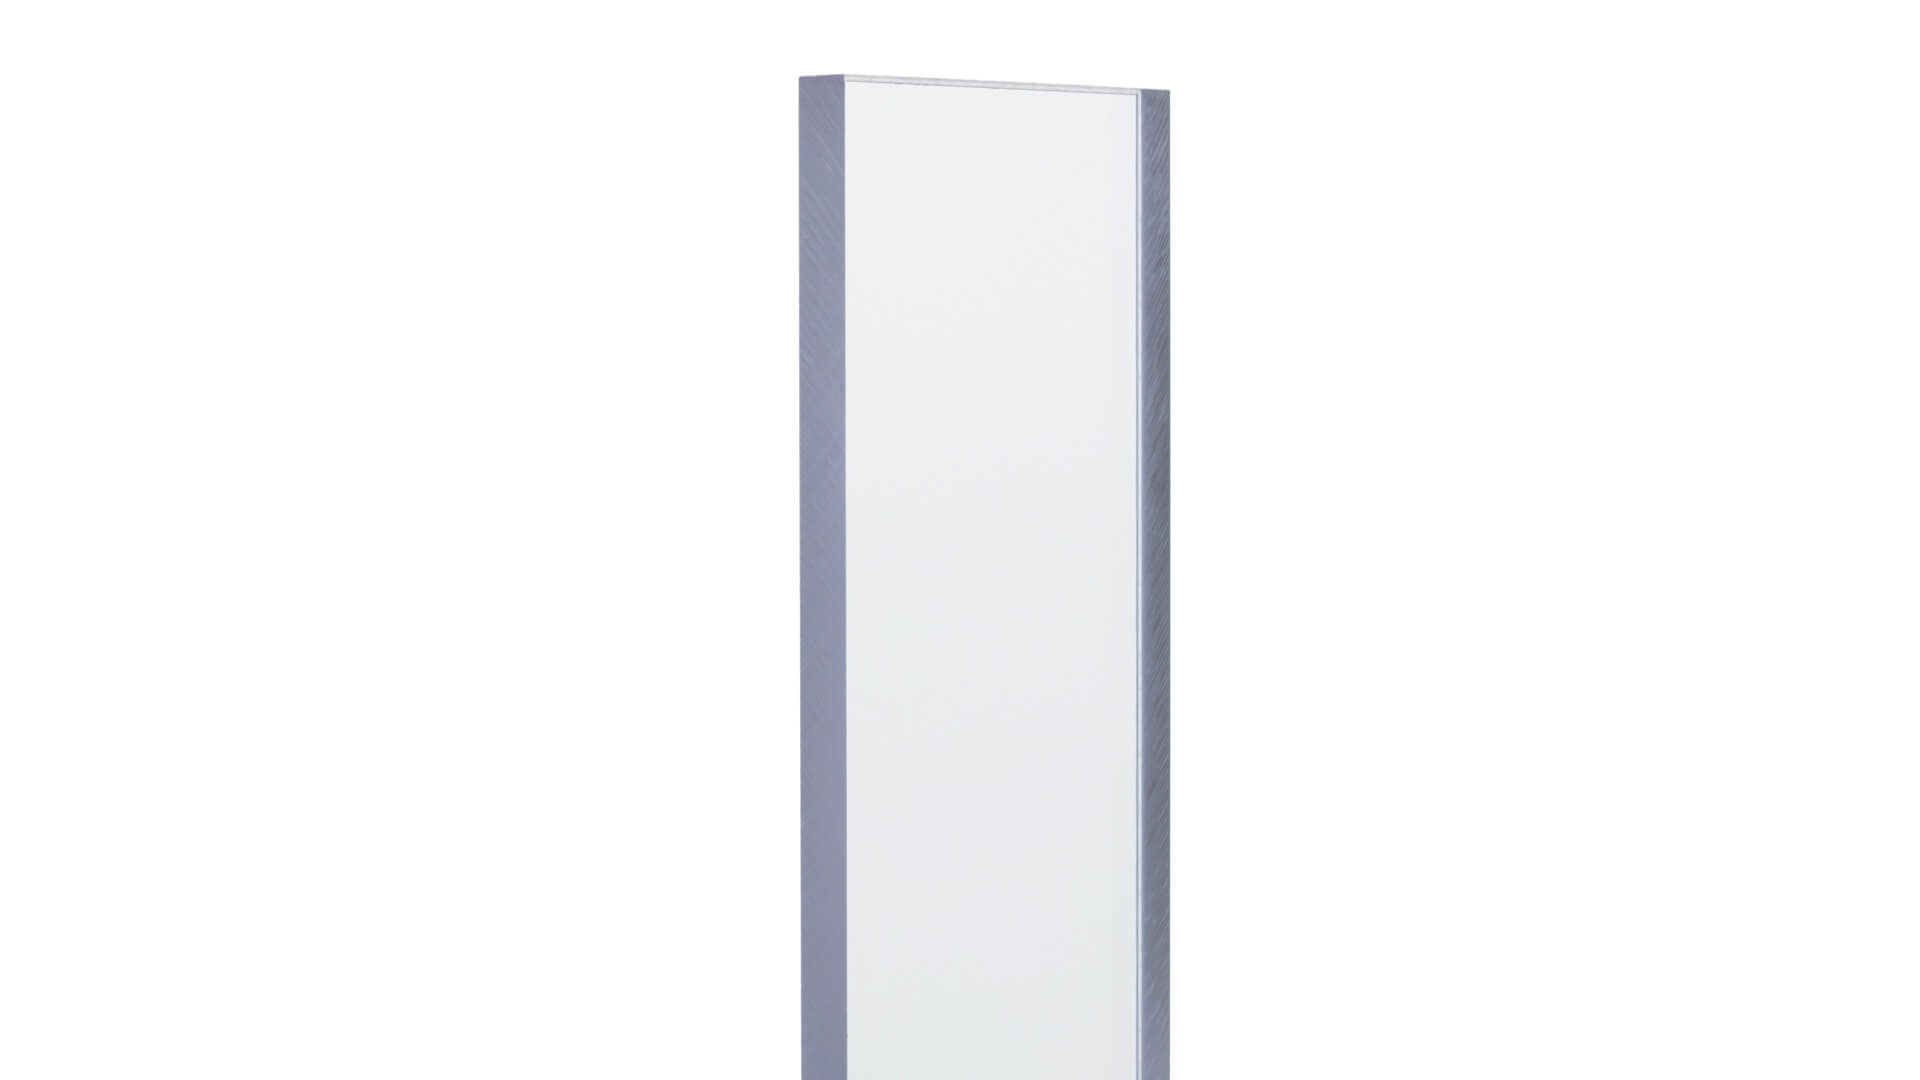 Plaque de Polycarbonate 16mm REFLEX PEARL Opal Anti-chaleur